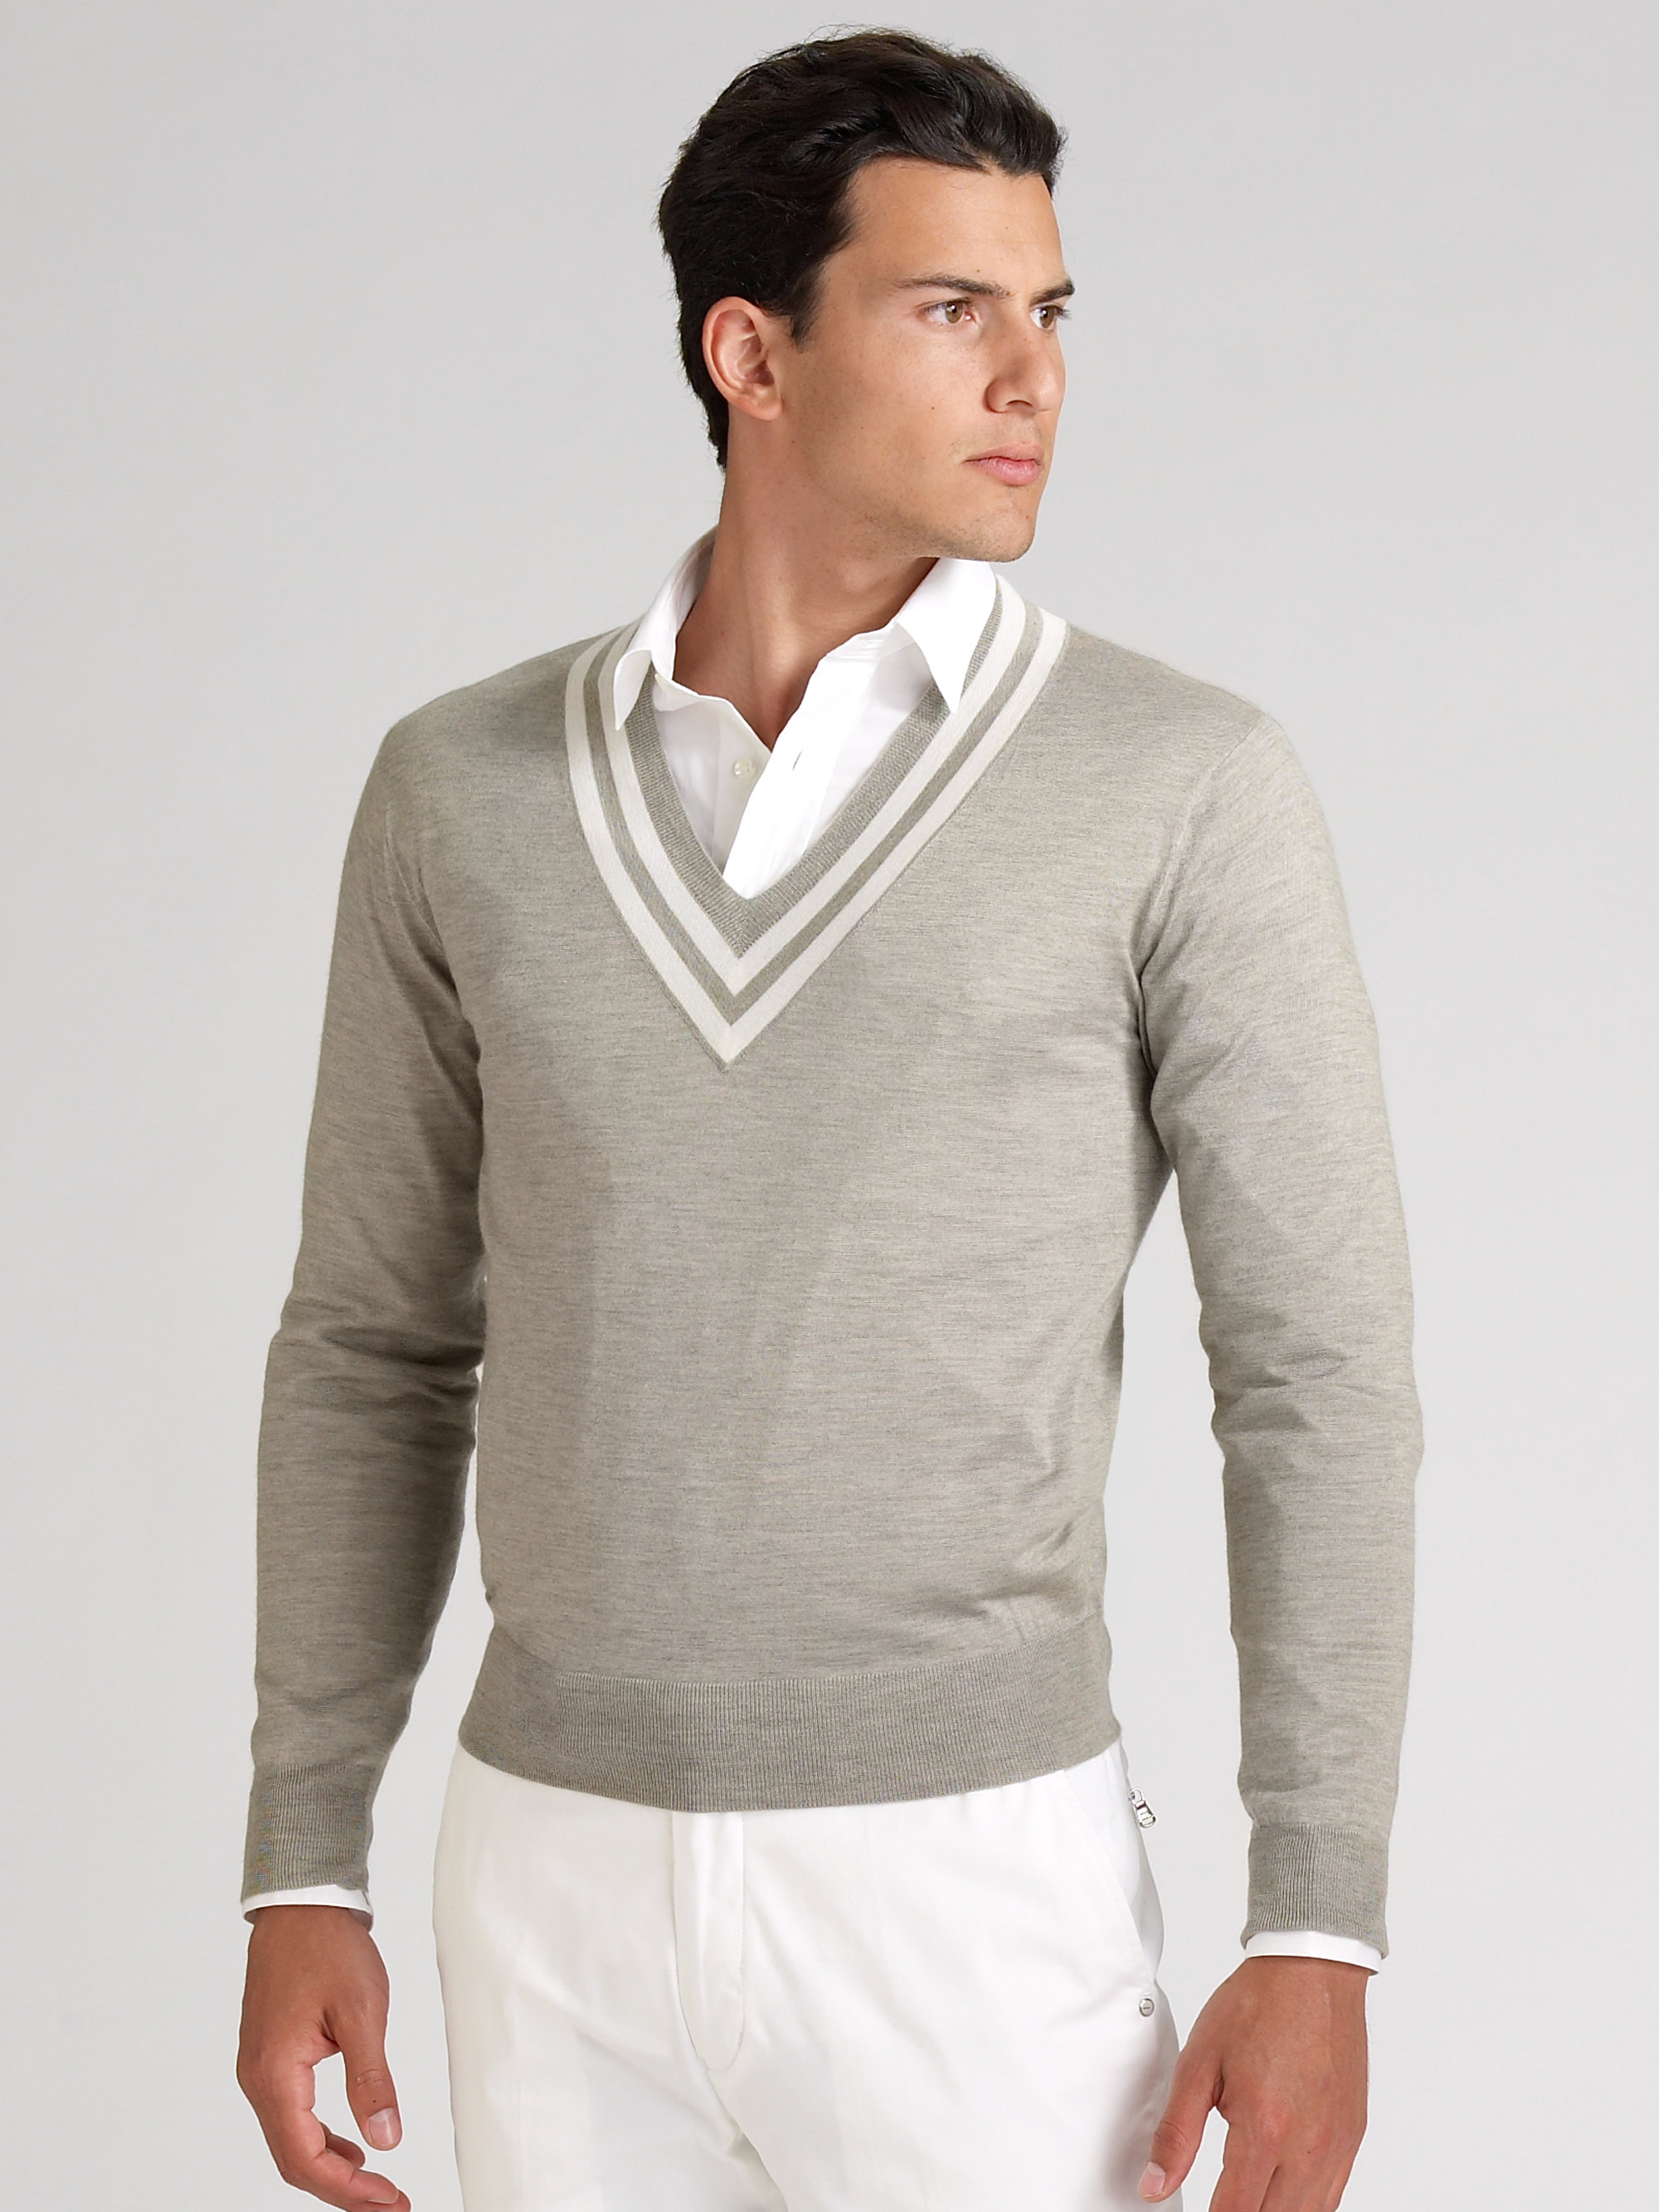 Lyst - Ralph lauren black label Silkcashmere Cricket Sweater in Gray ...